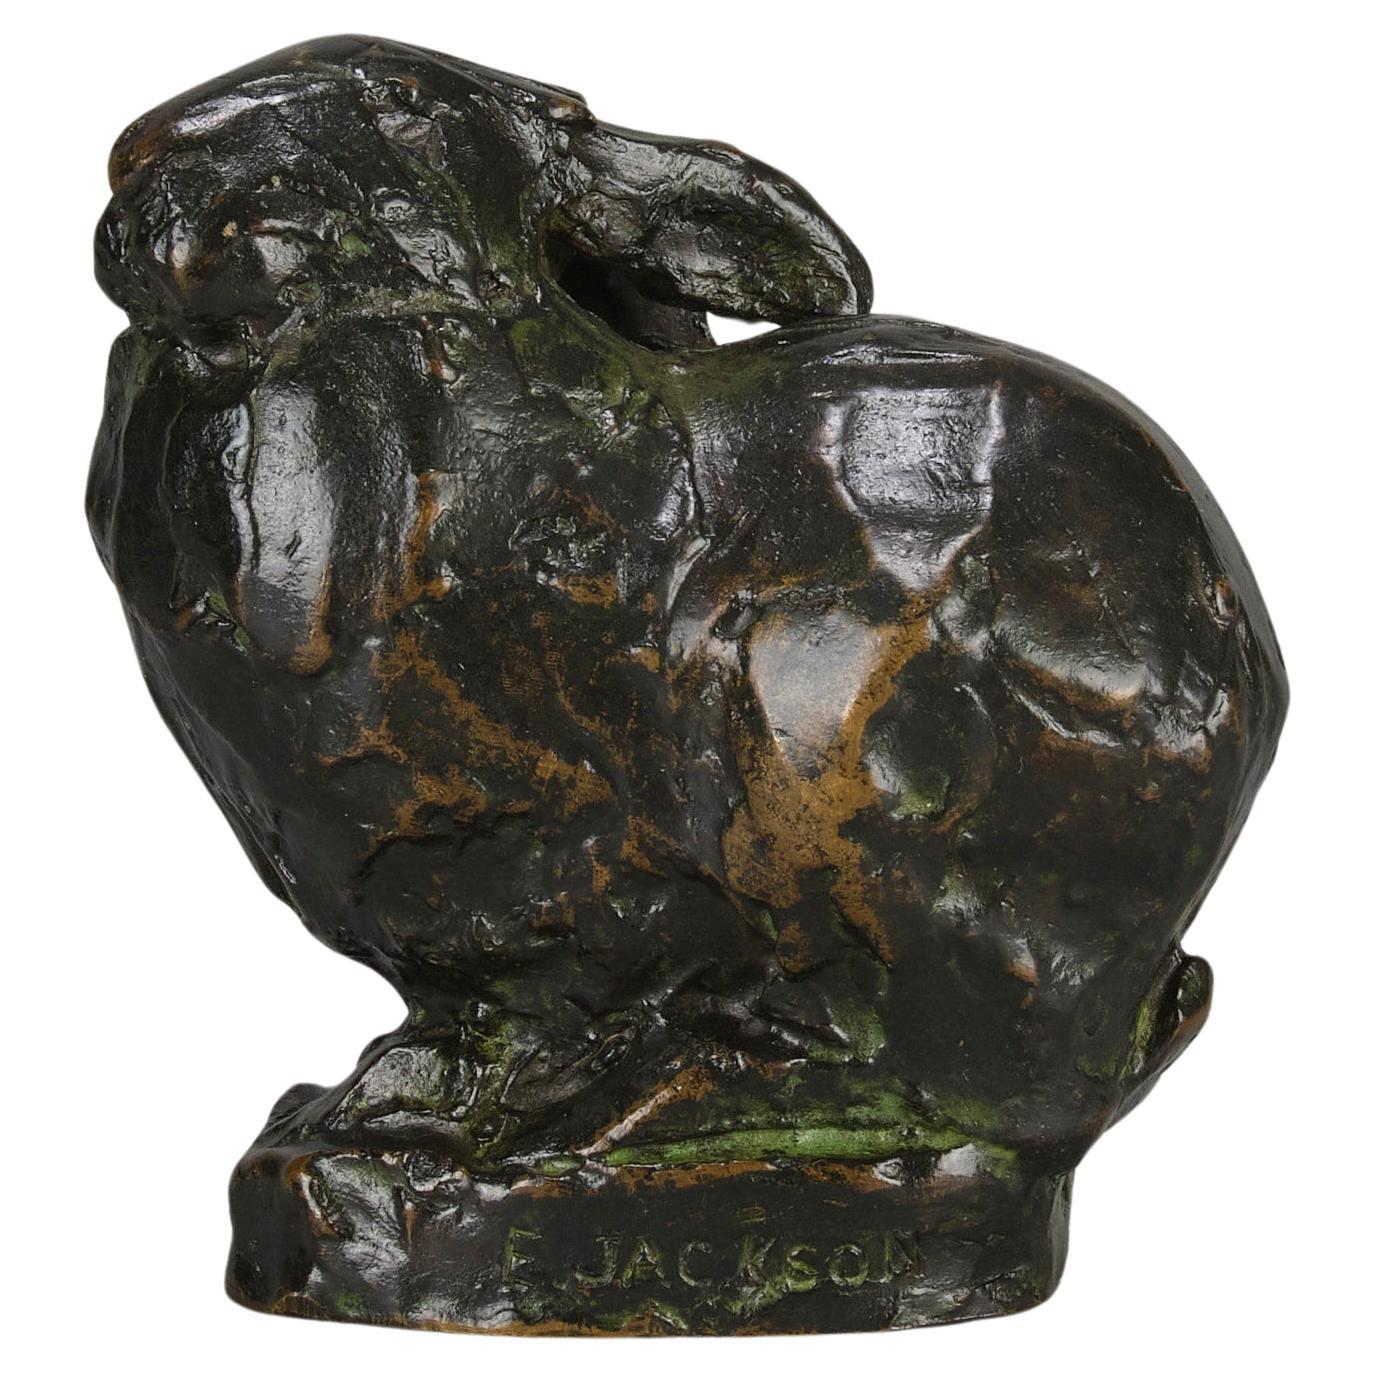 Sculpture en bronze du début du 20e siècle intitulée "Lapin assis"  par Ernest Jackson